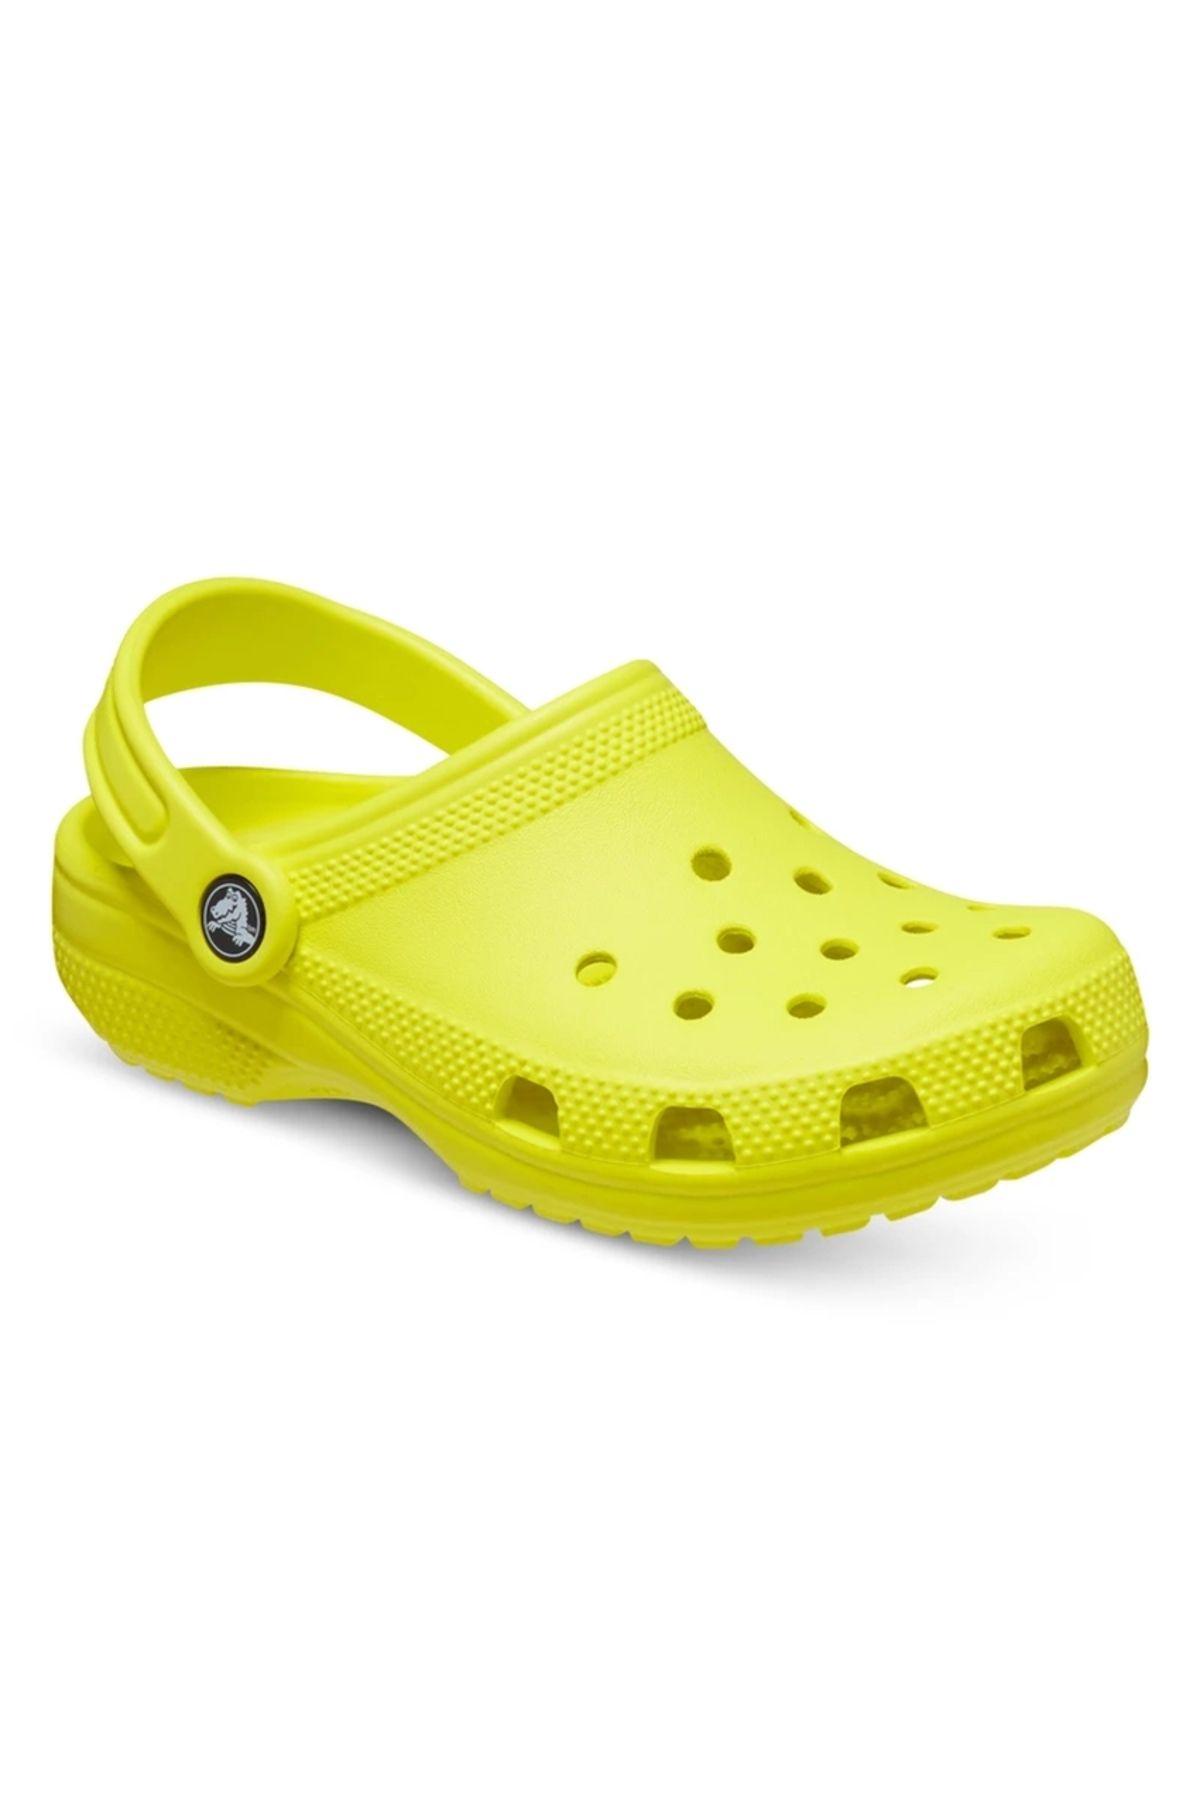 Crocs Classic TODDLER Yeşil Çocuk Terlik 206991-76M